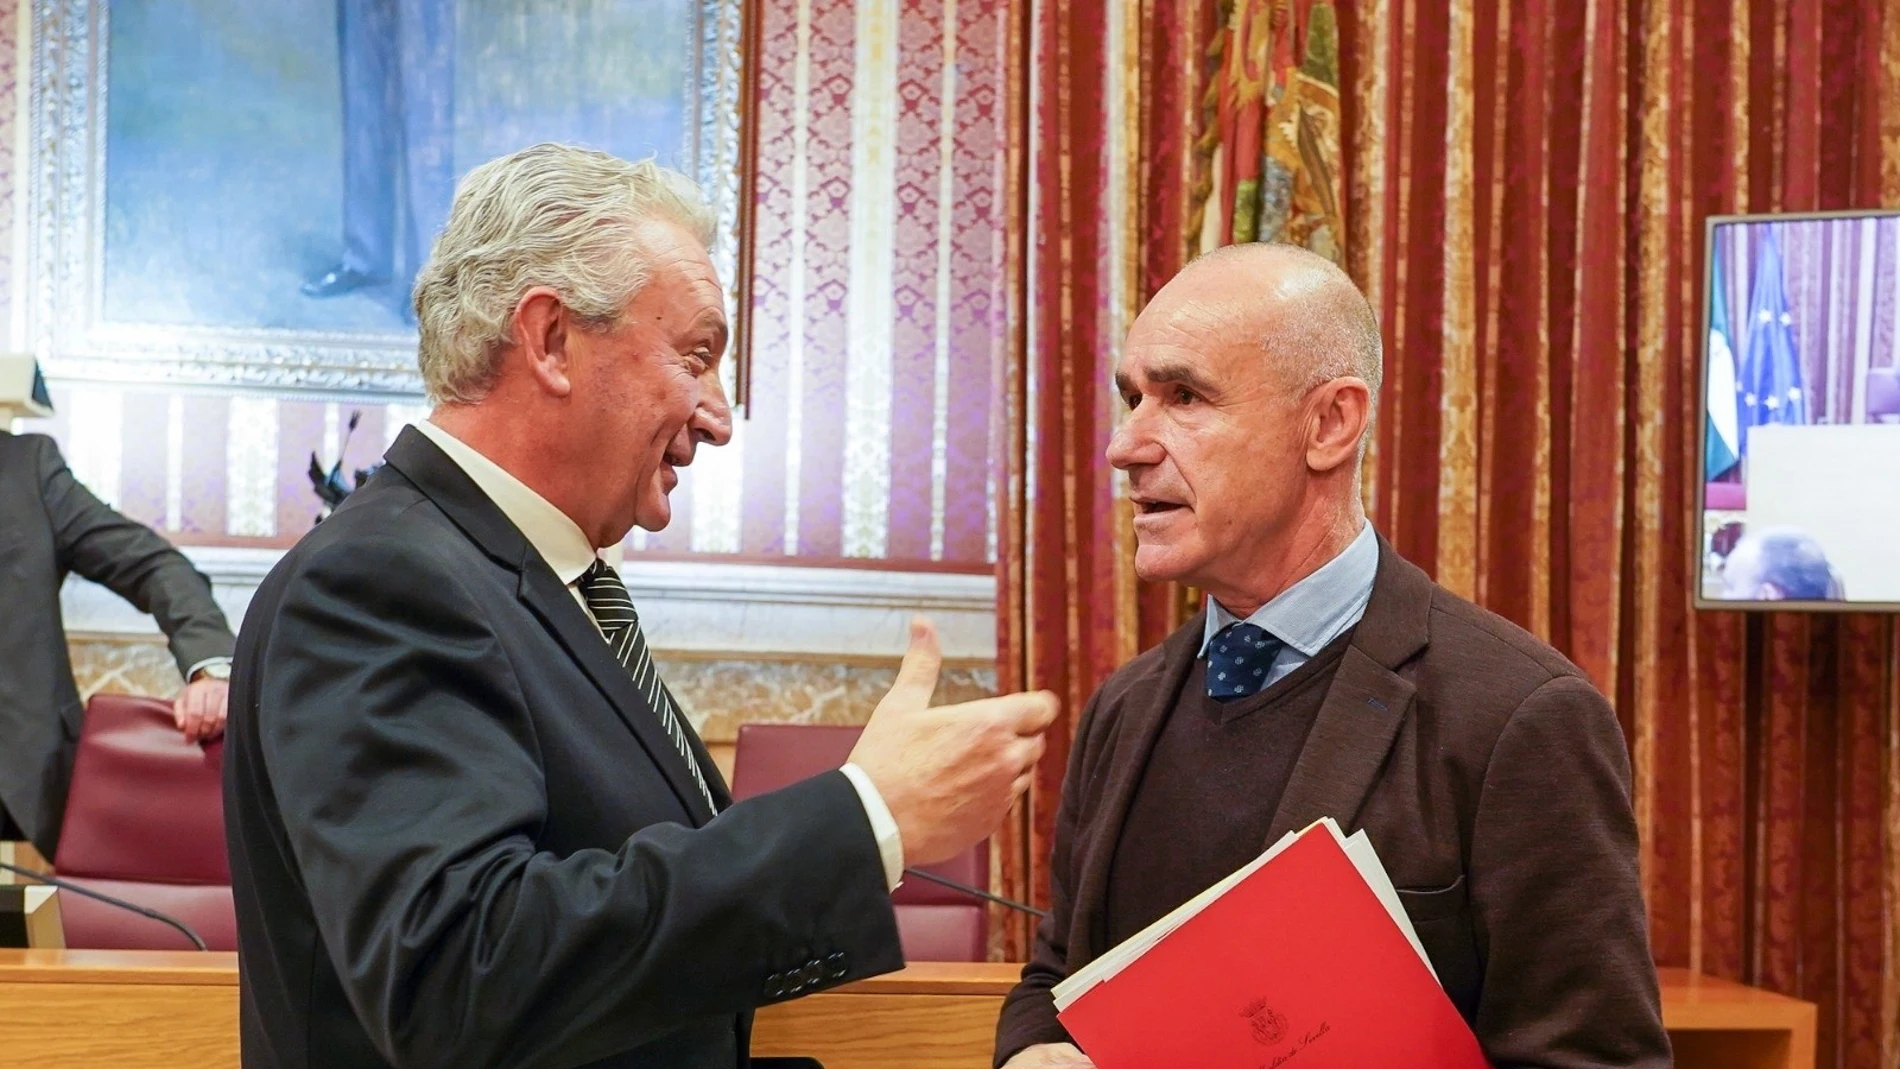 El alcalde de Sevilla, Antonio Muñoz, conversa con el portavoz de Cs, Miguel Ángel Aumesquet. FRANCISCO J. OLMO / EUROPA PRESS